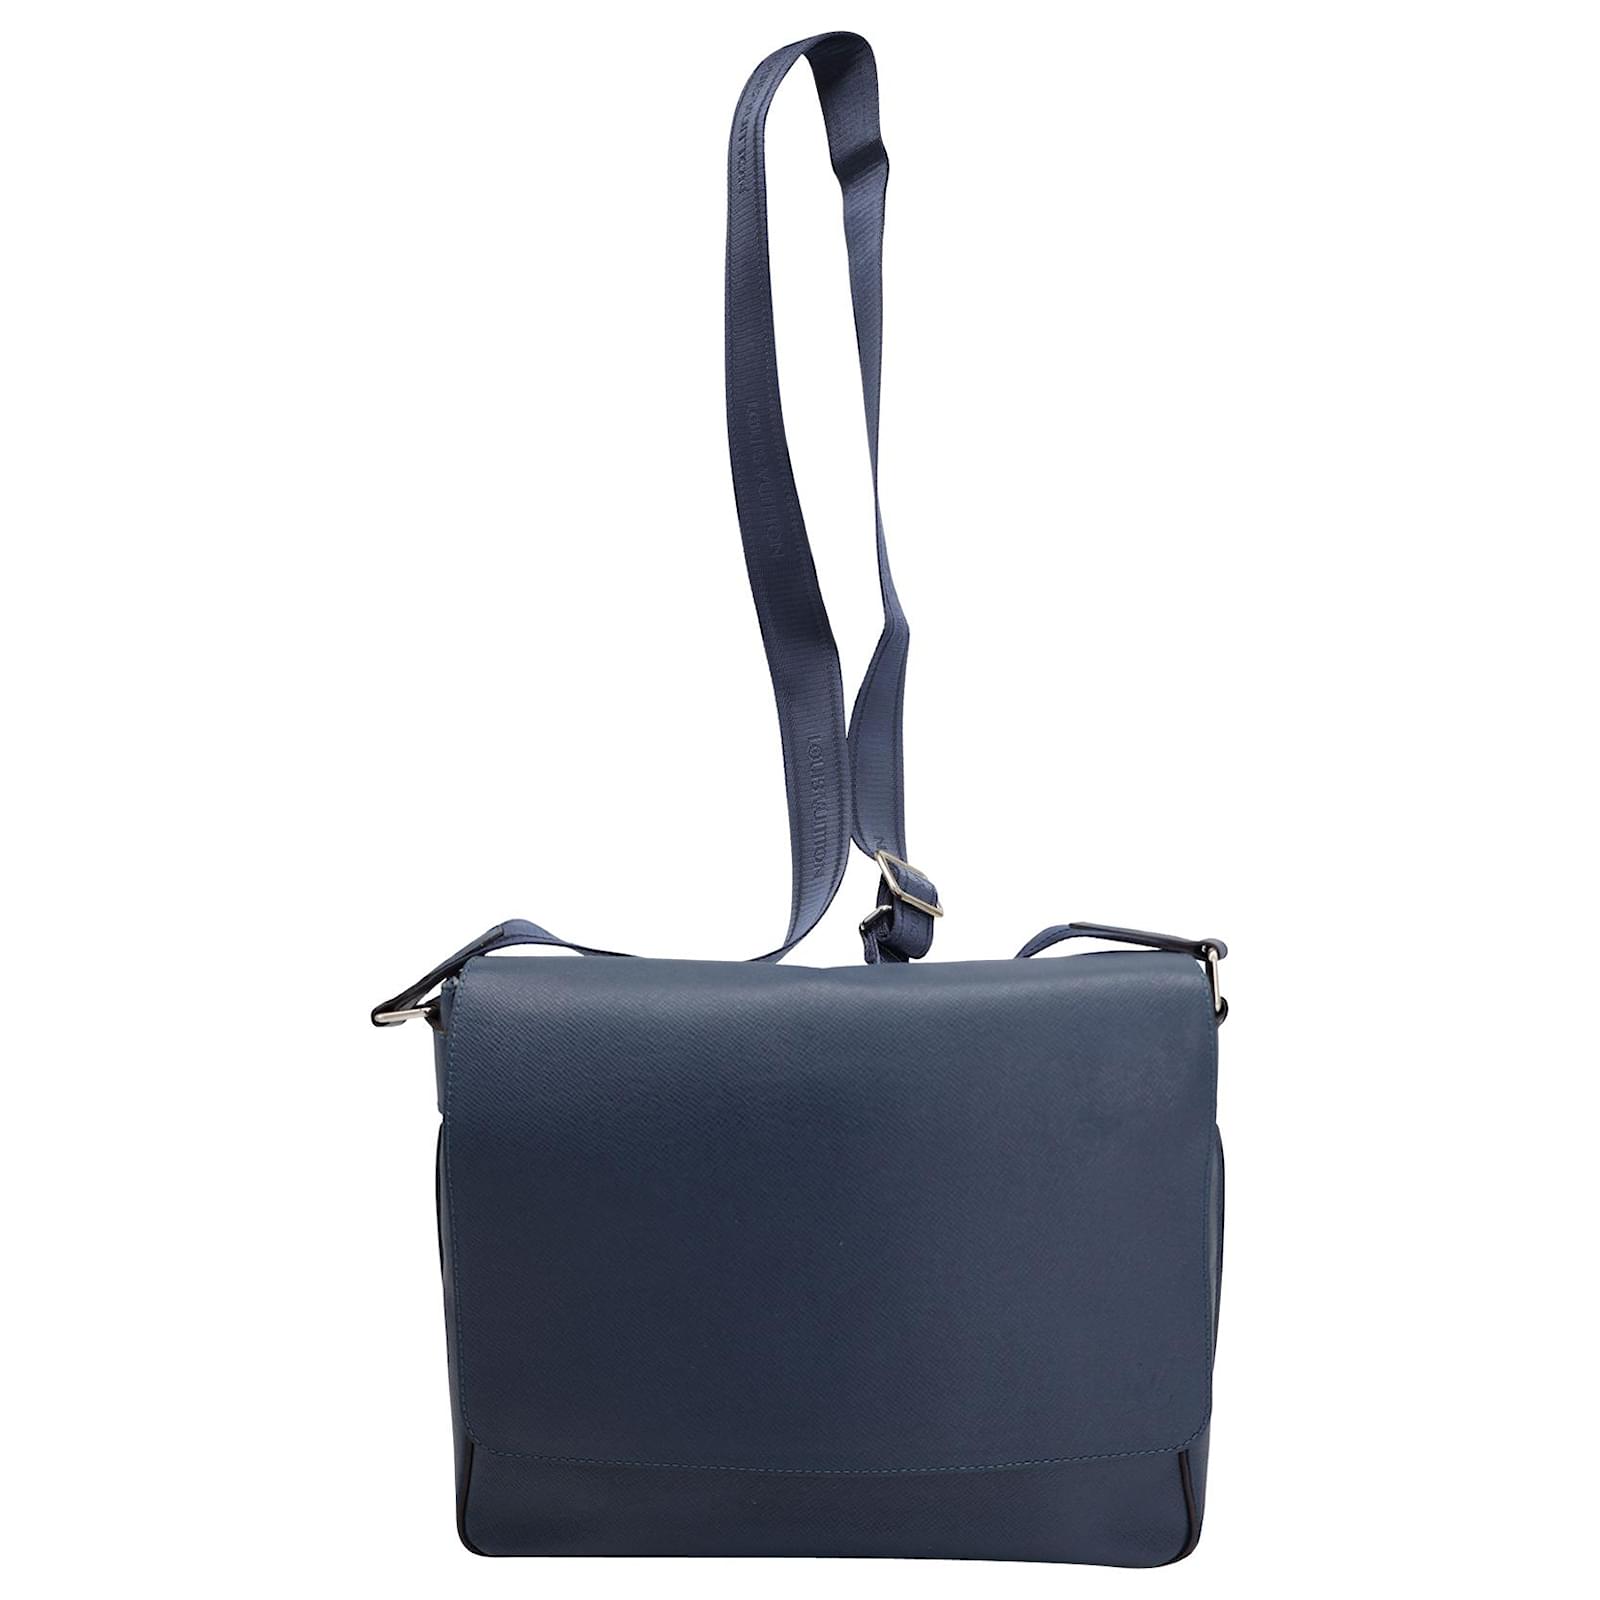 Louis Vuitton DISTRICT PM Messenger Bag - Luxuryeasy